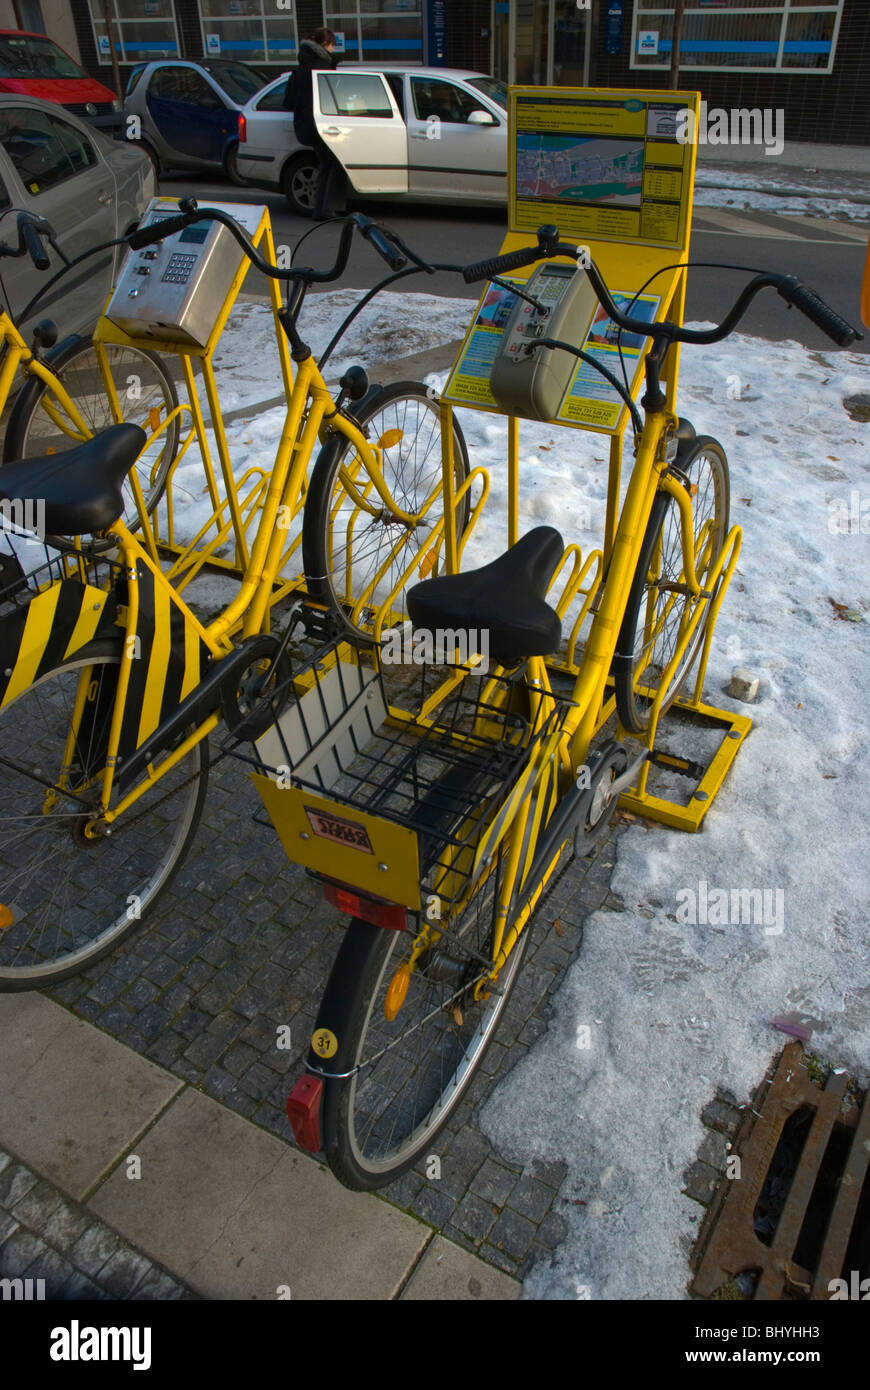 Service de location de vélos automatisé Jello Karlin de Prague République Tchèque Europe Banque D'Images